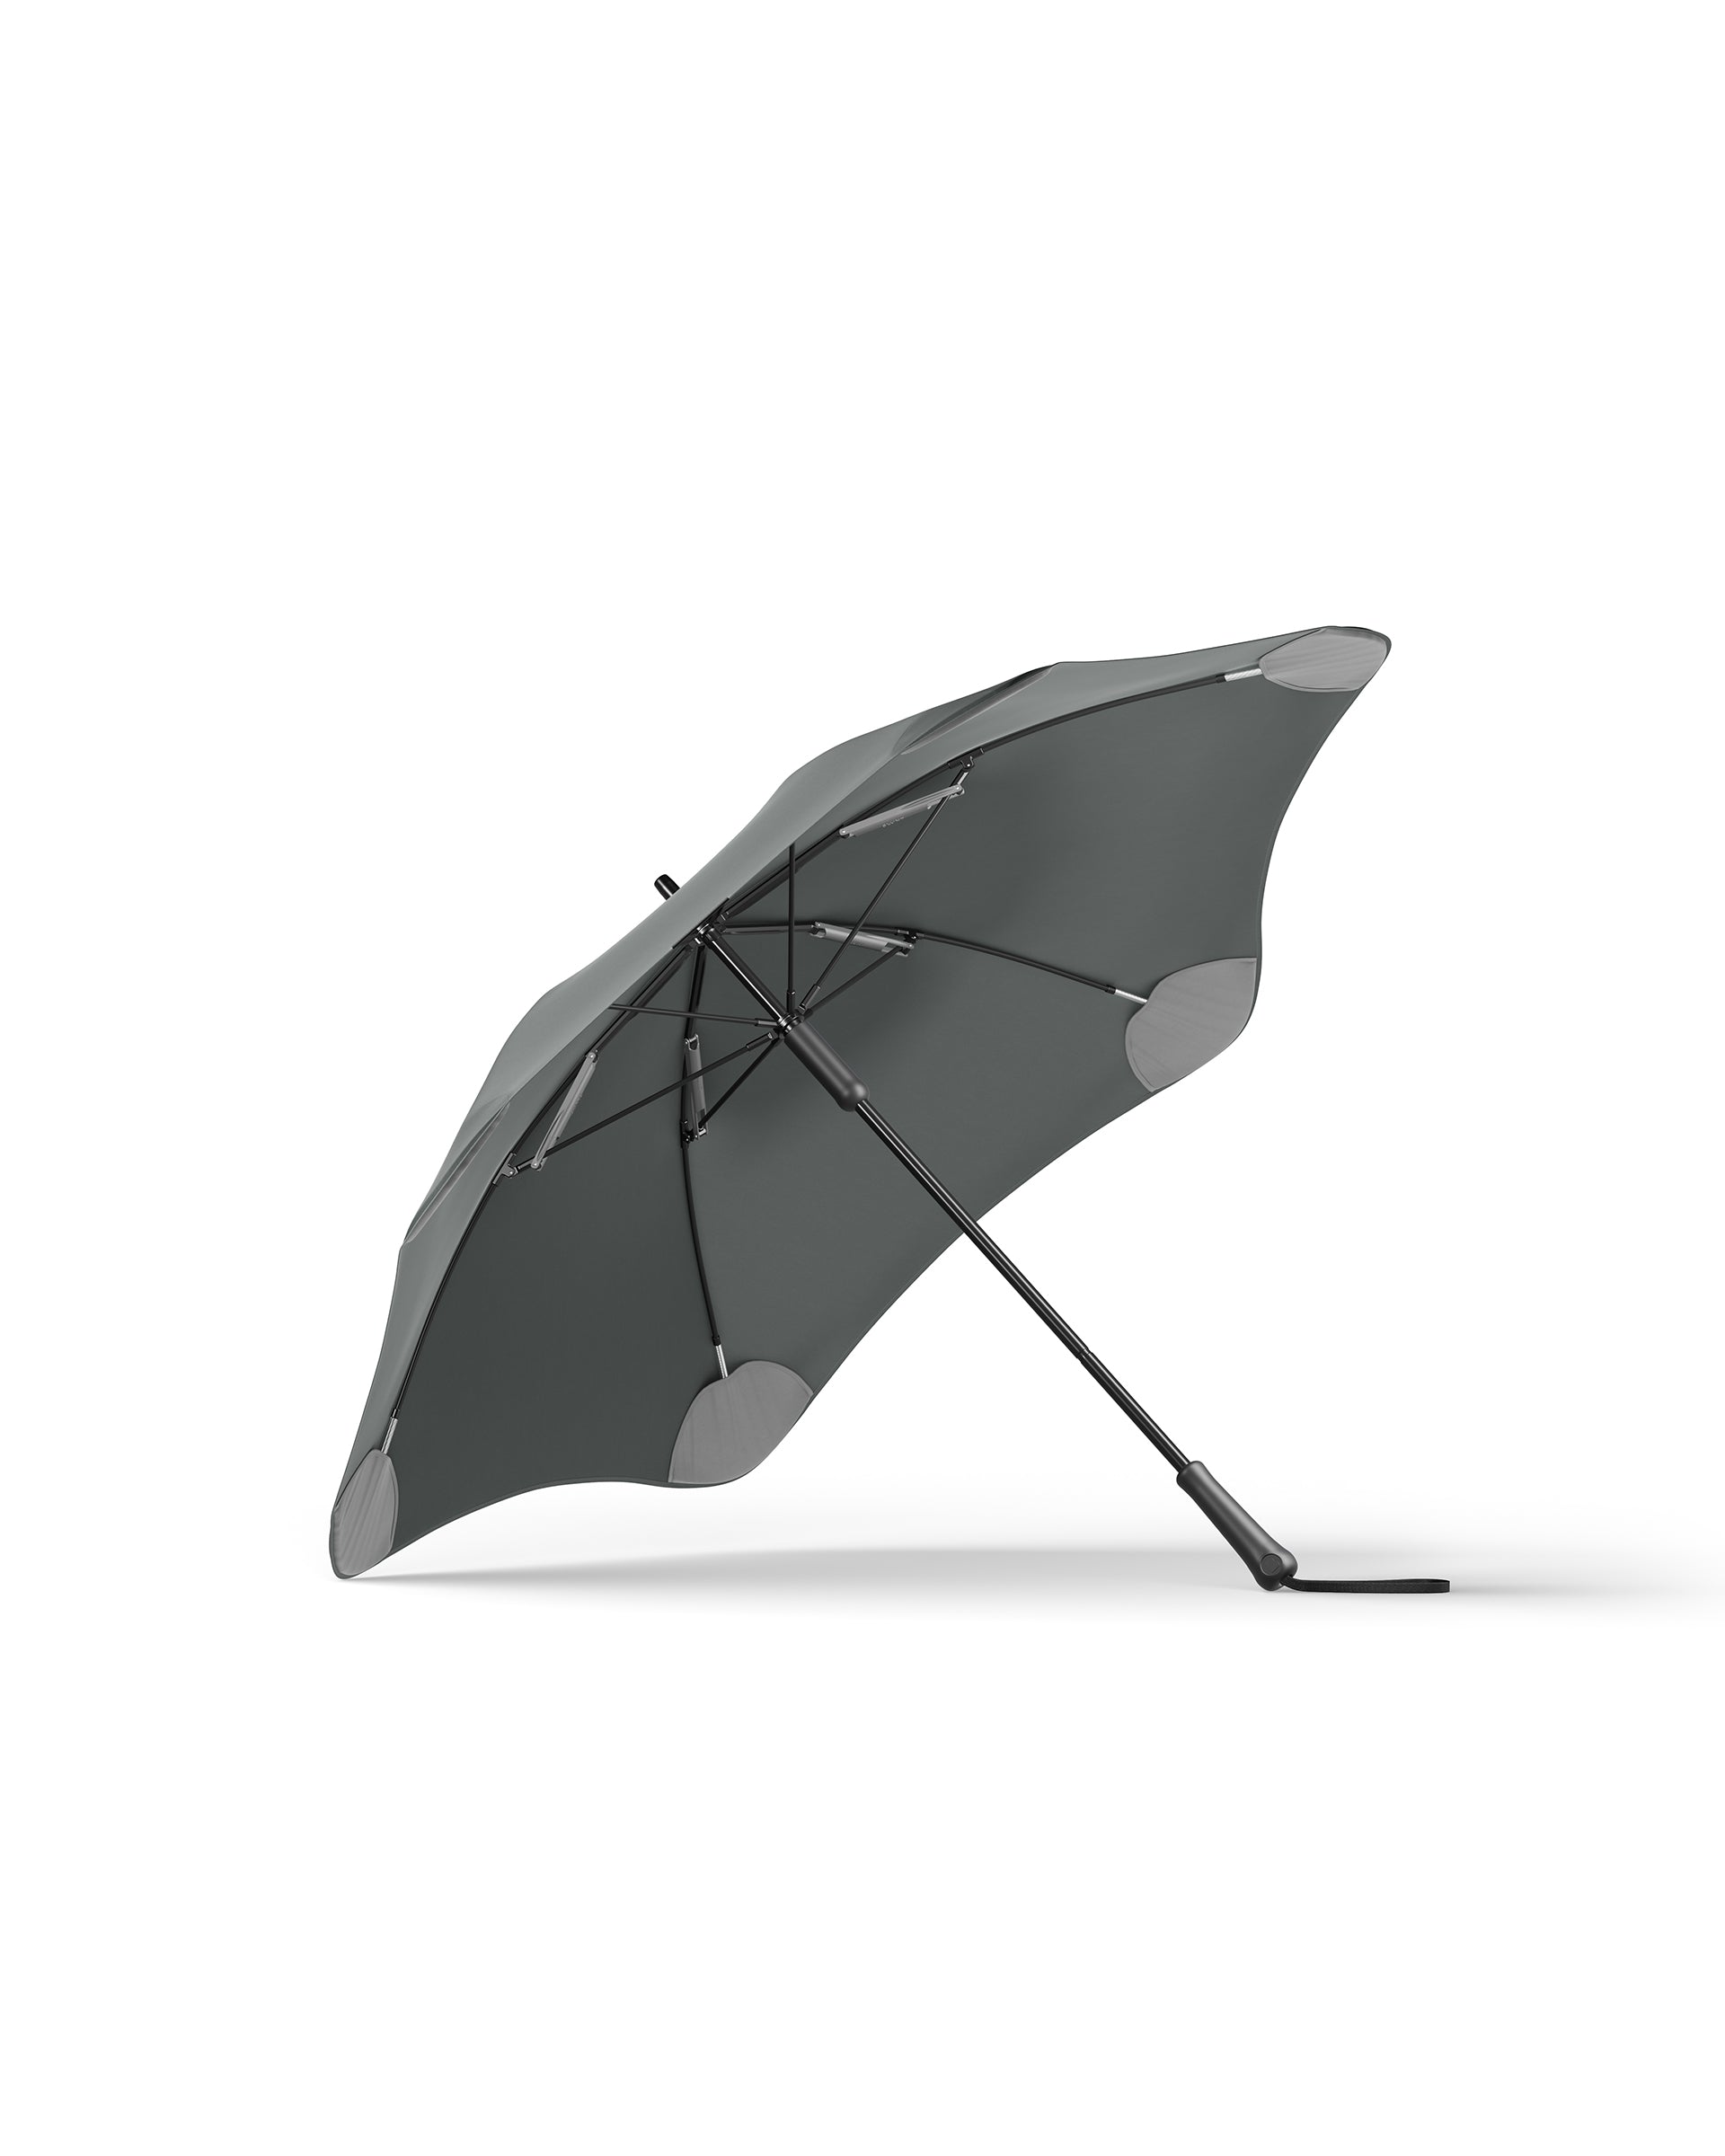 Charcoal Blunt Classic New Zealand Large Umbrella